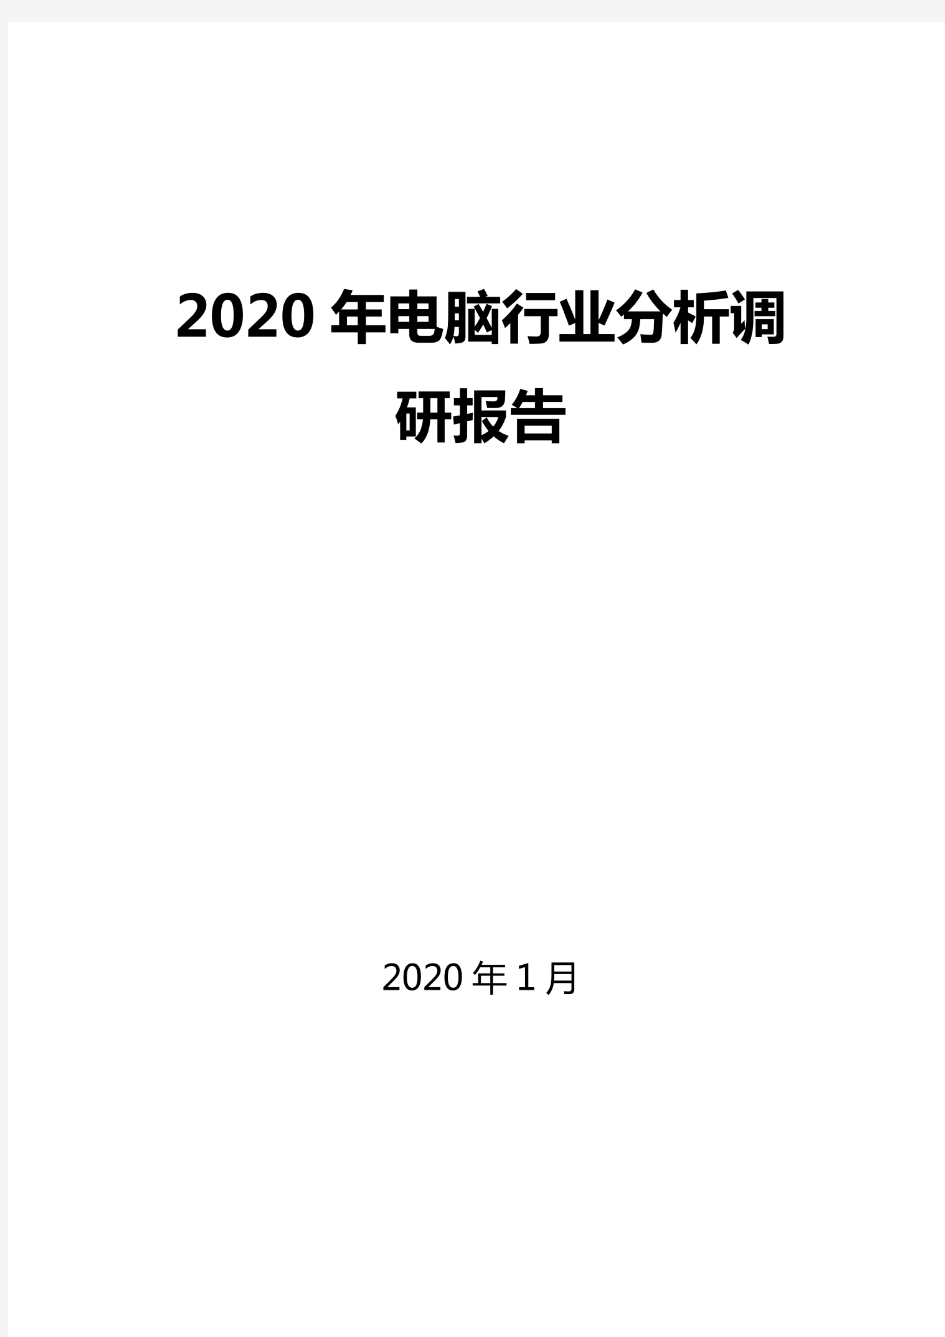 2020电脑行业分析调研报告